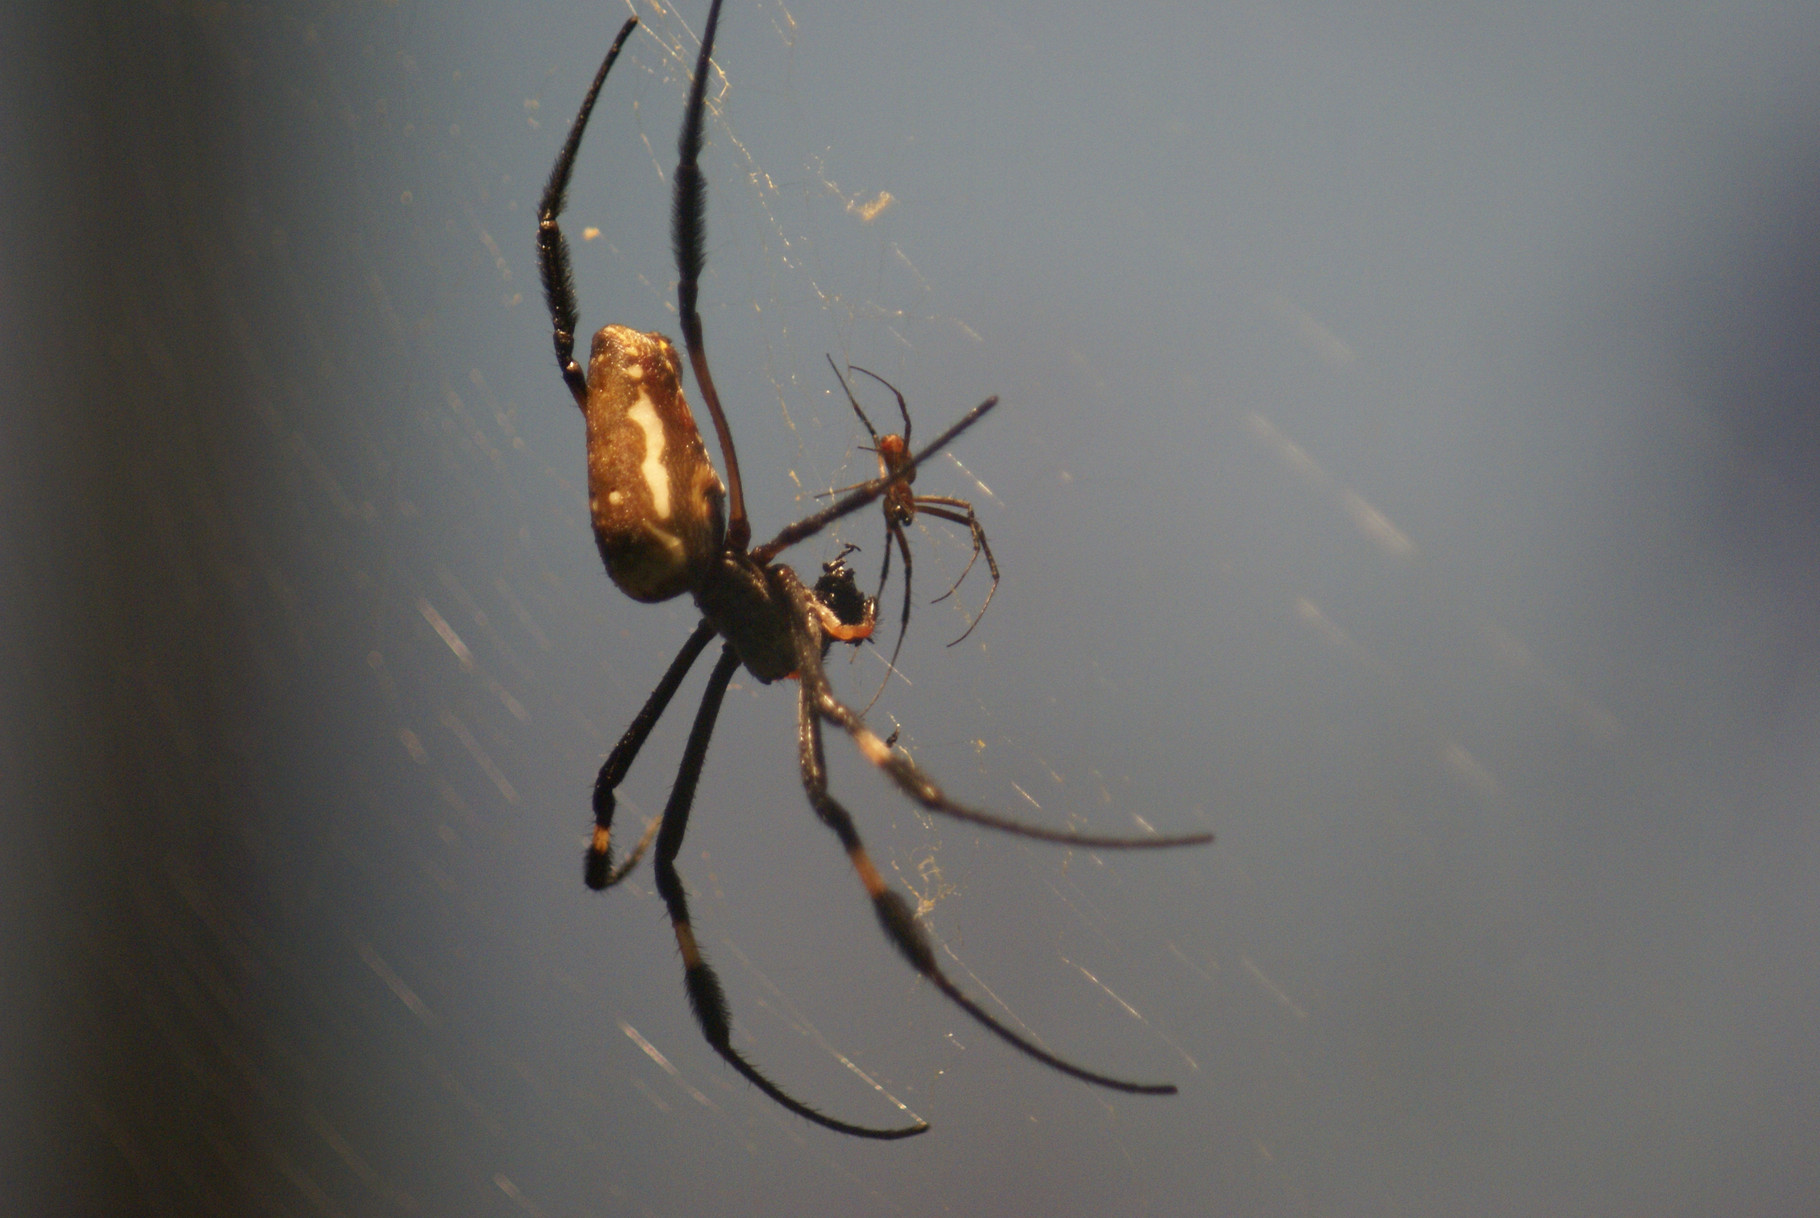 Spider (Wilhelma Stuttgart)